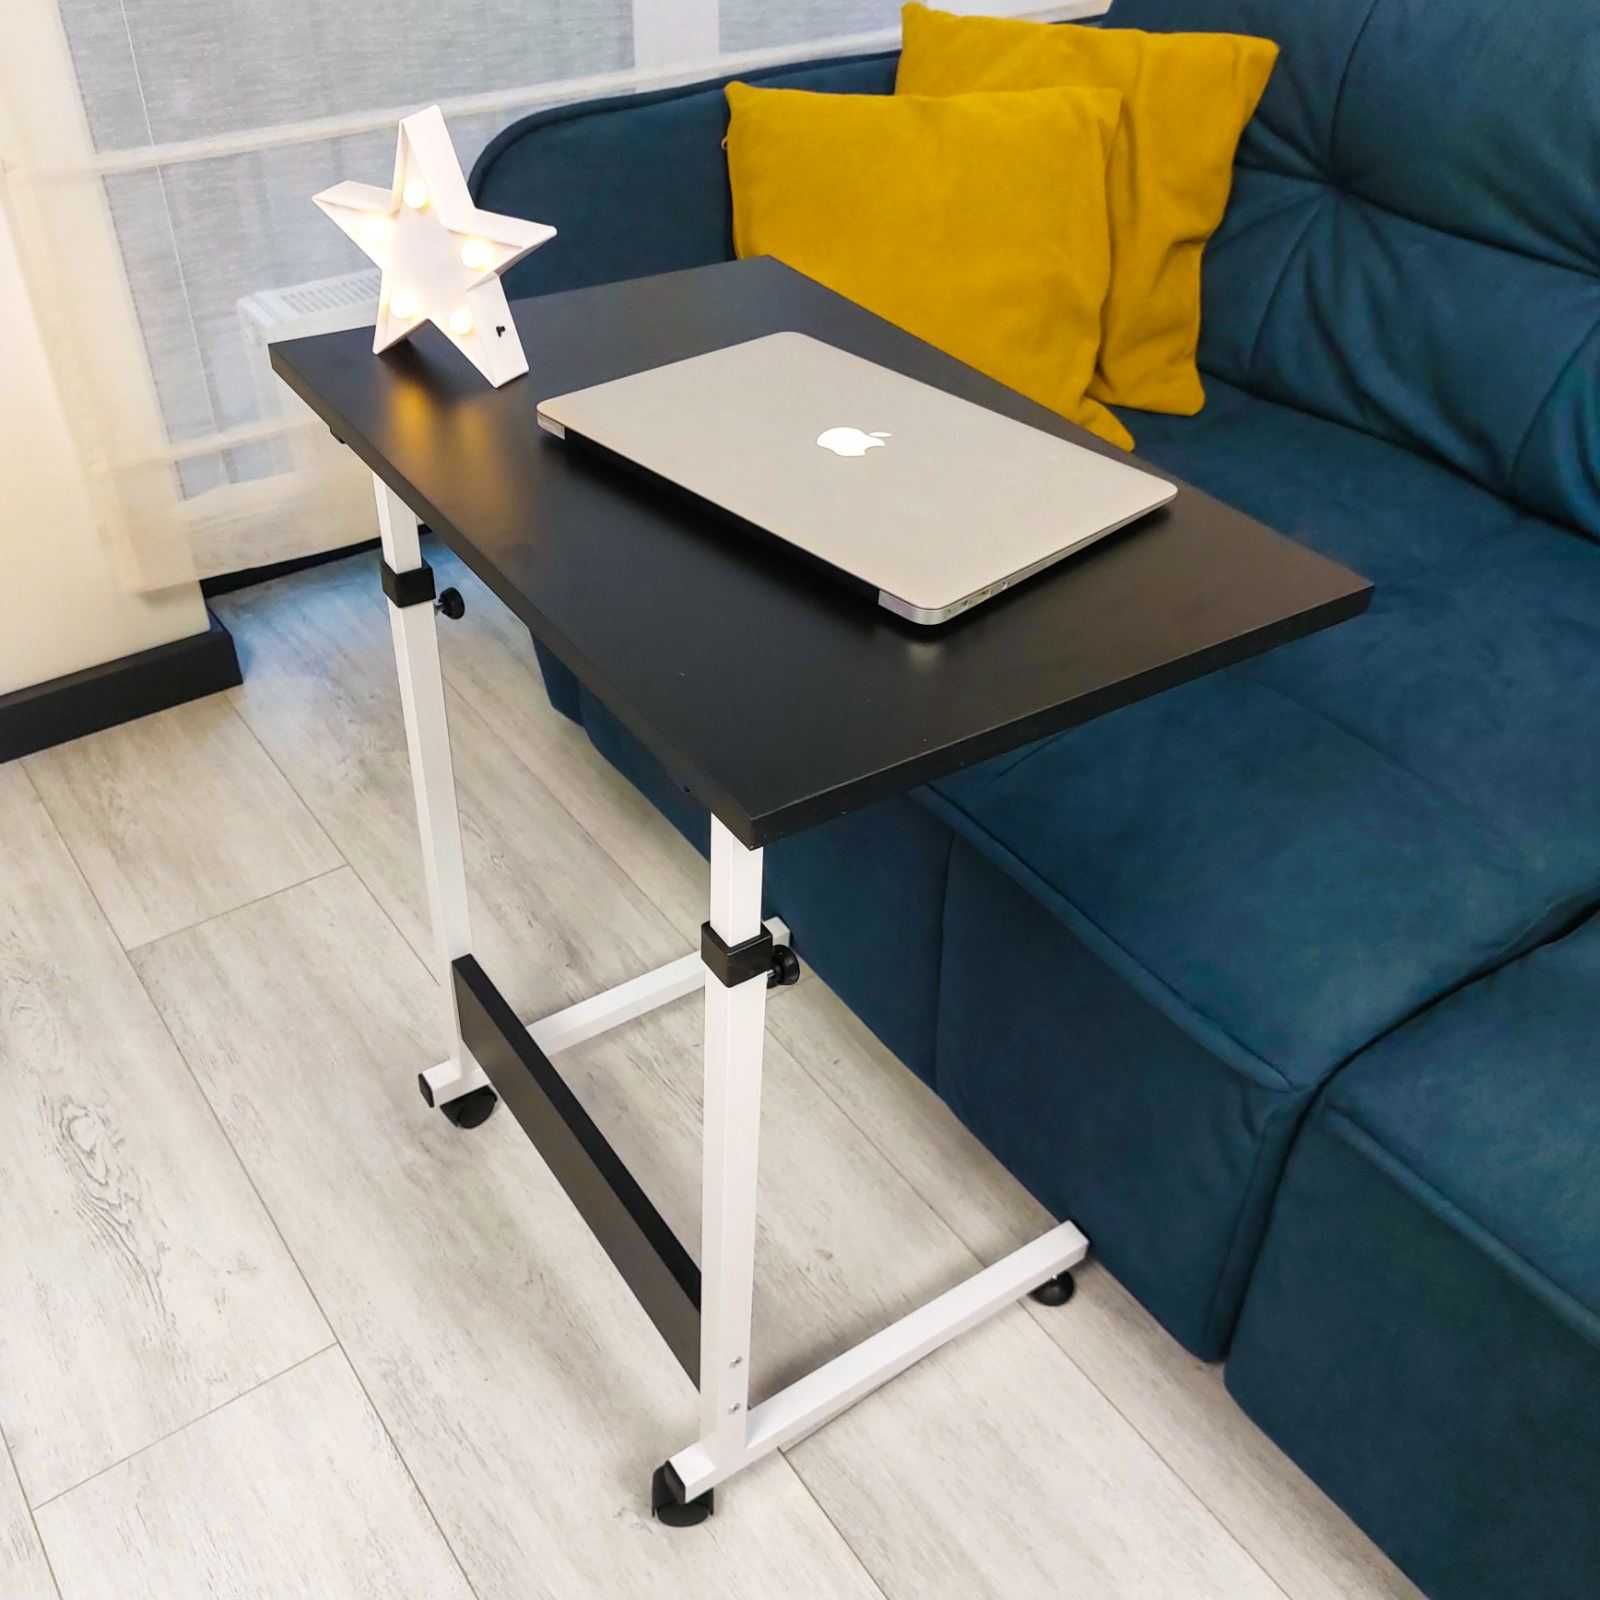 Прикроватный стол для ноутбука или завтрака с регулировкой высоты